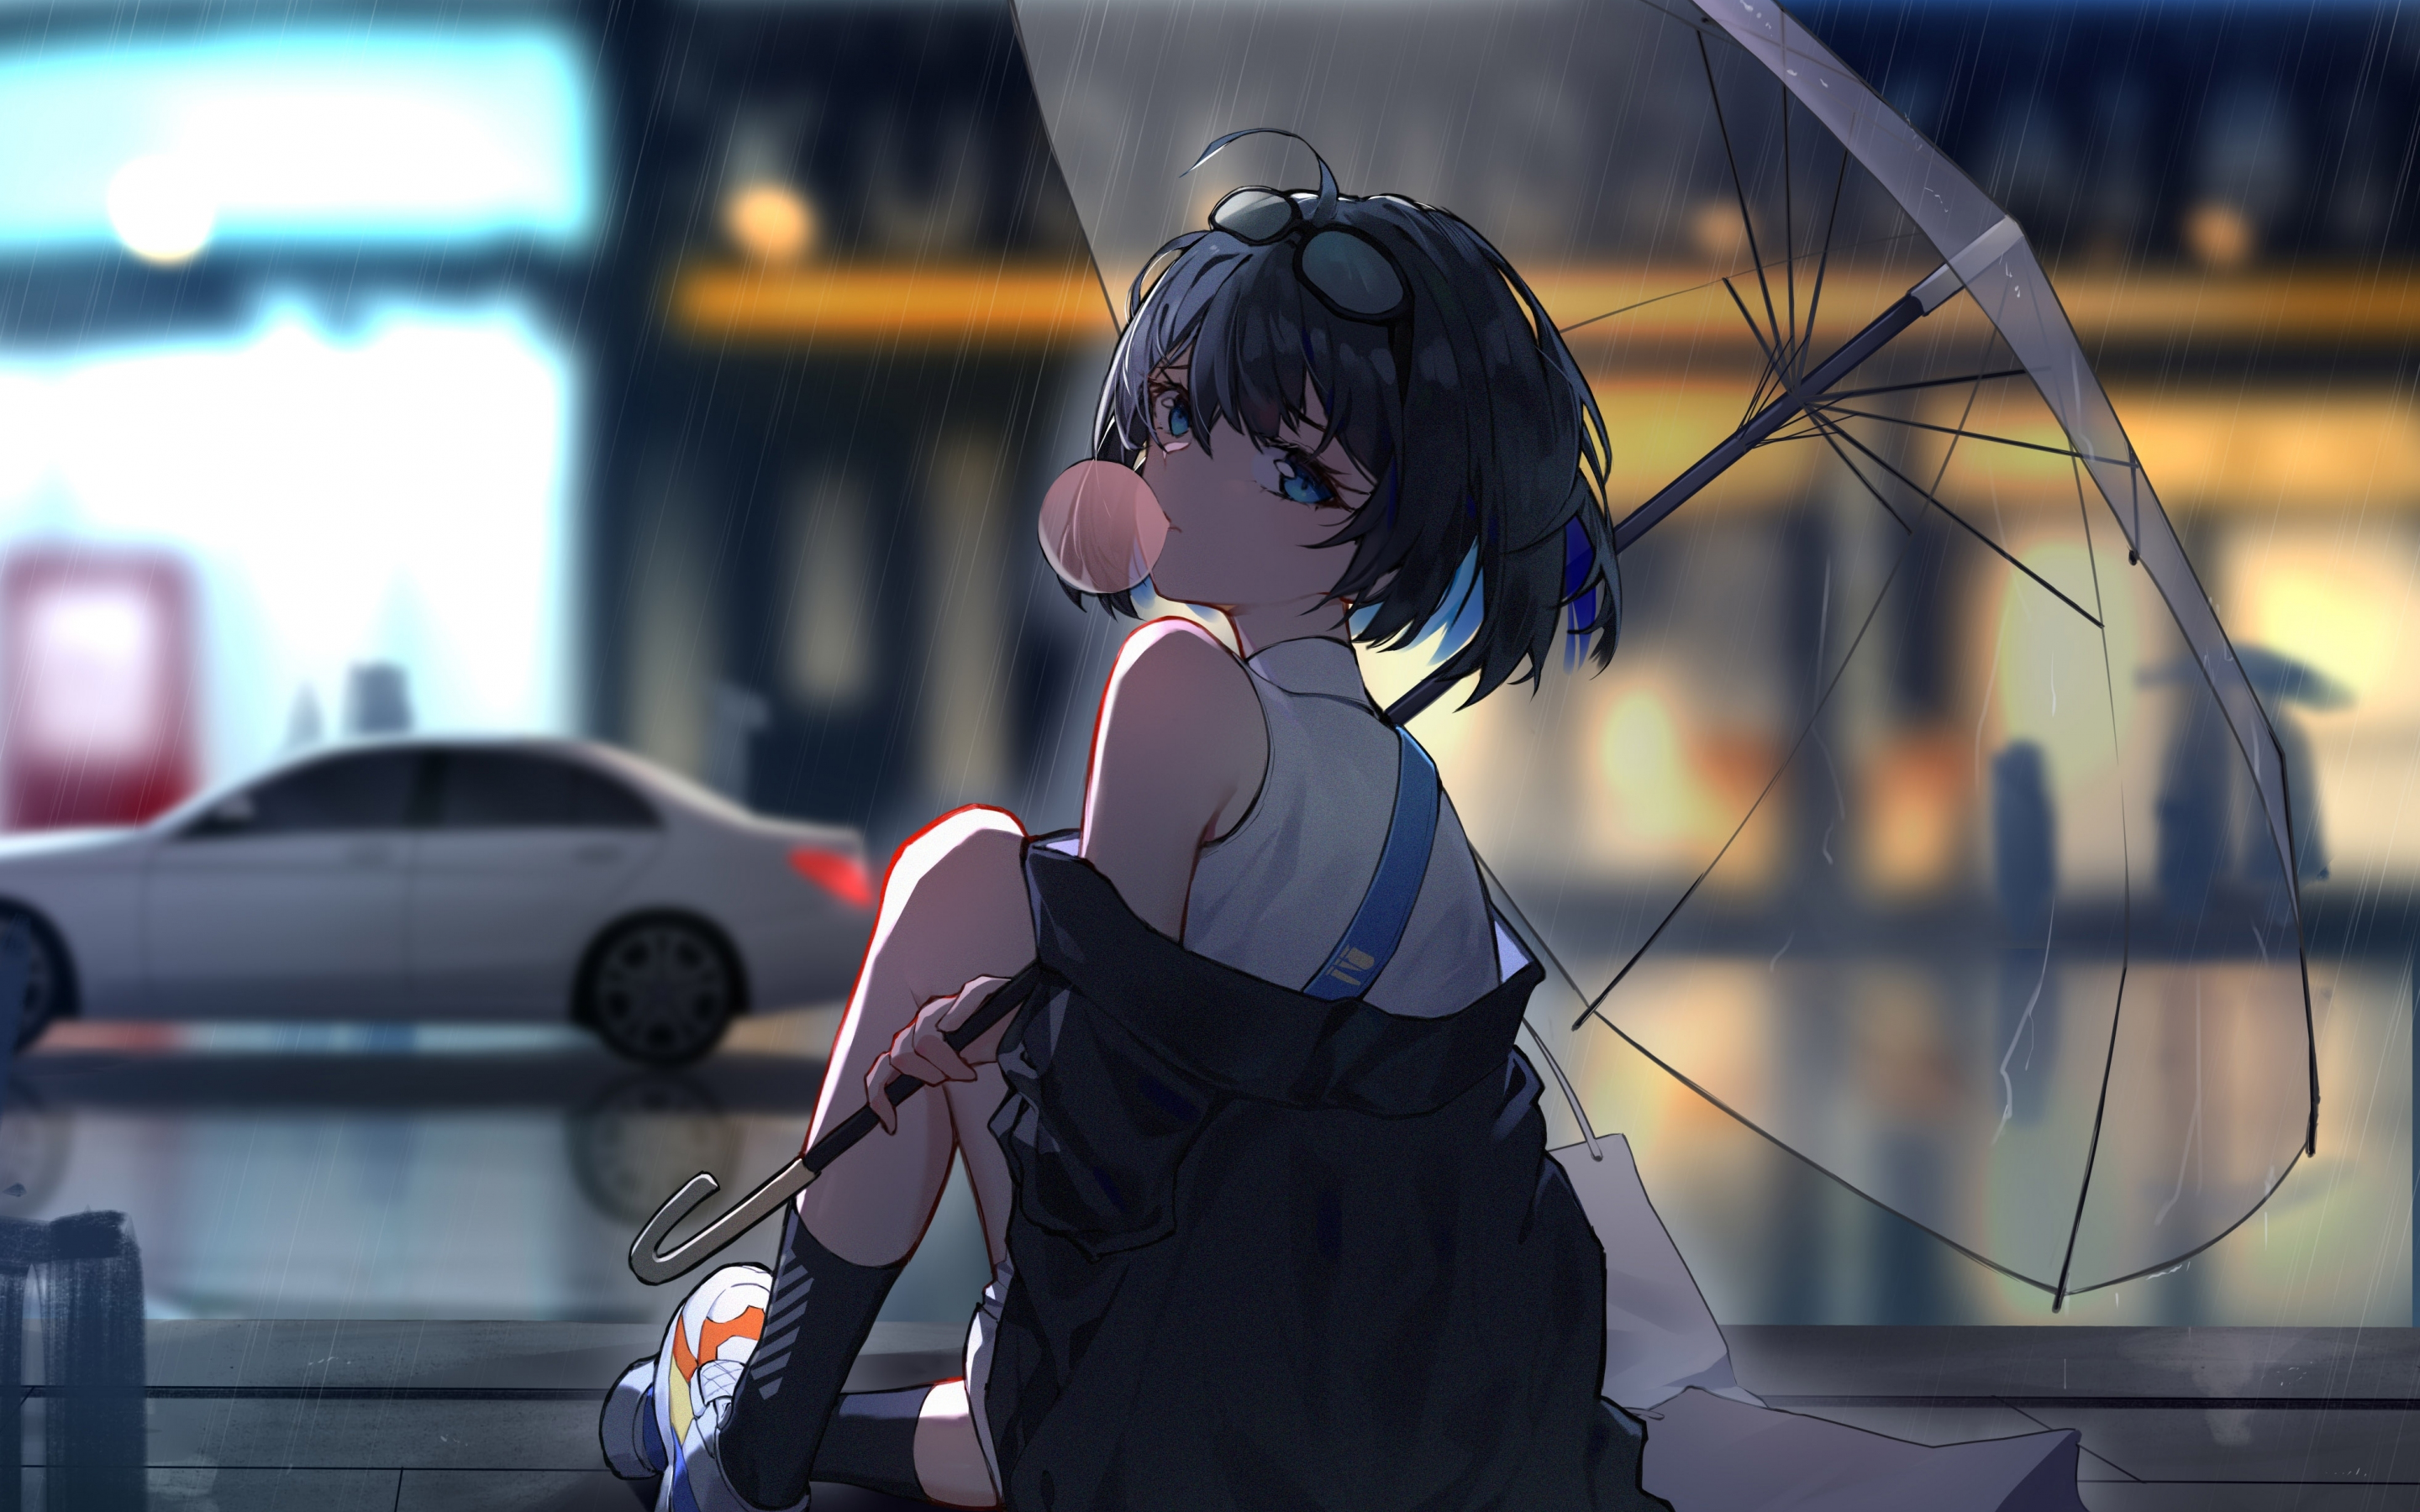 Download wallpaper 2880x1800 enjoying rain, anime girl, mac pro retaia  2880x1800 hd background, 25093